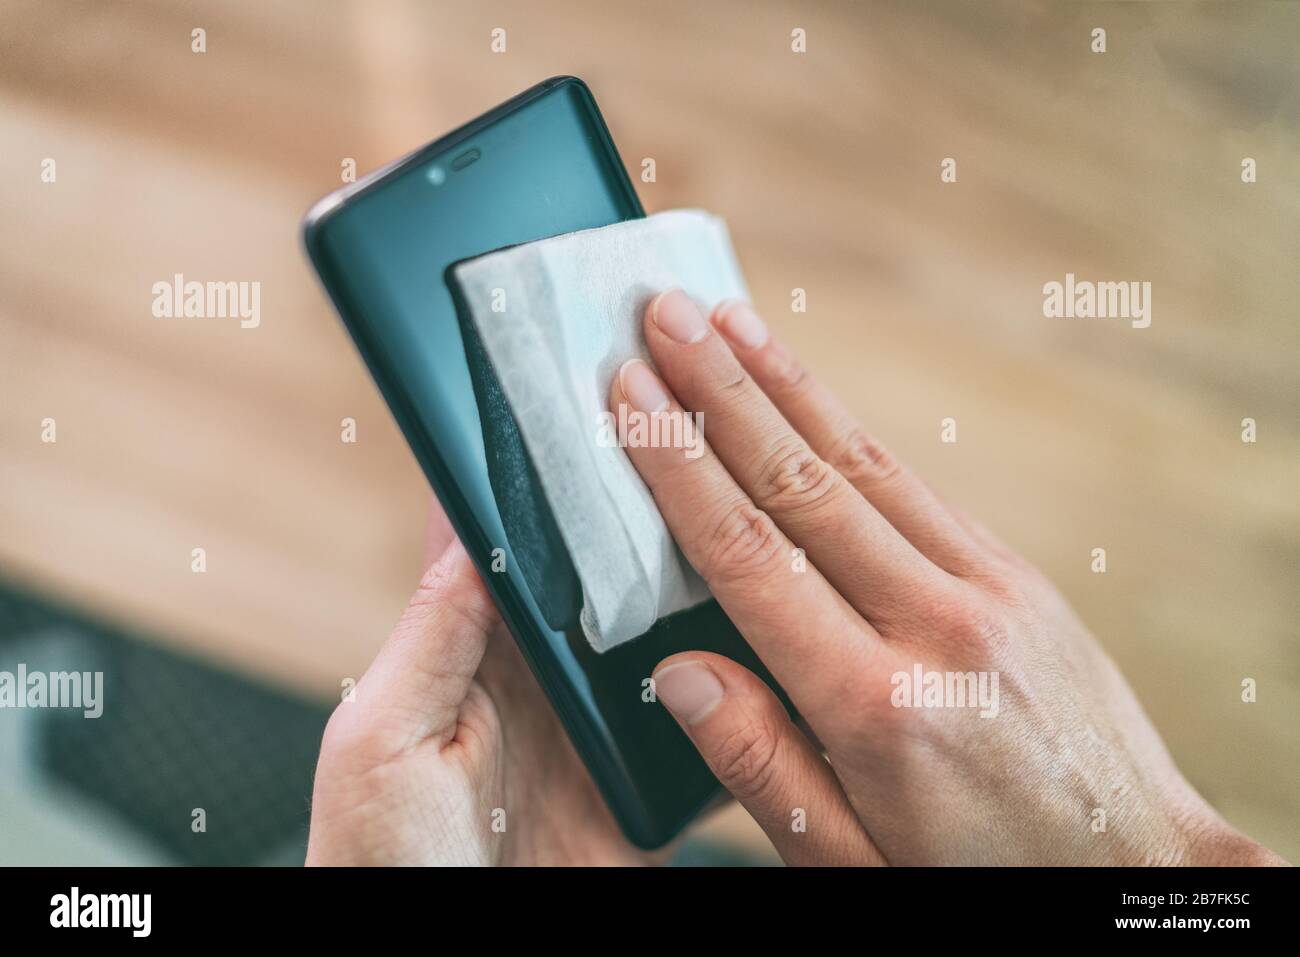 Nettoyage de l'écran du téléphone portable avec lingettes désinfectantes humides pour un nettoyage préventif du smartphone pour la prévention de la contamination par l'éclosion de COVID-19 Coronavirus. Banque D'Images